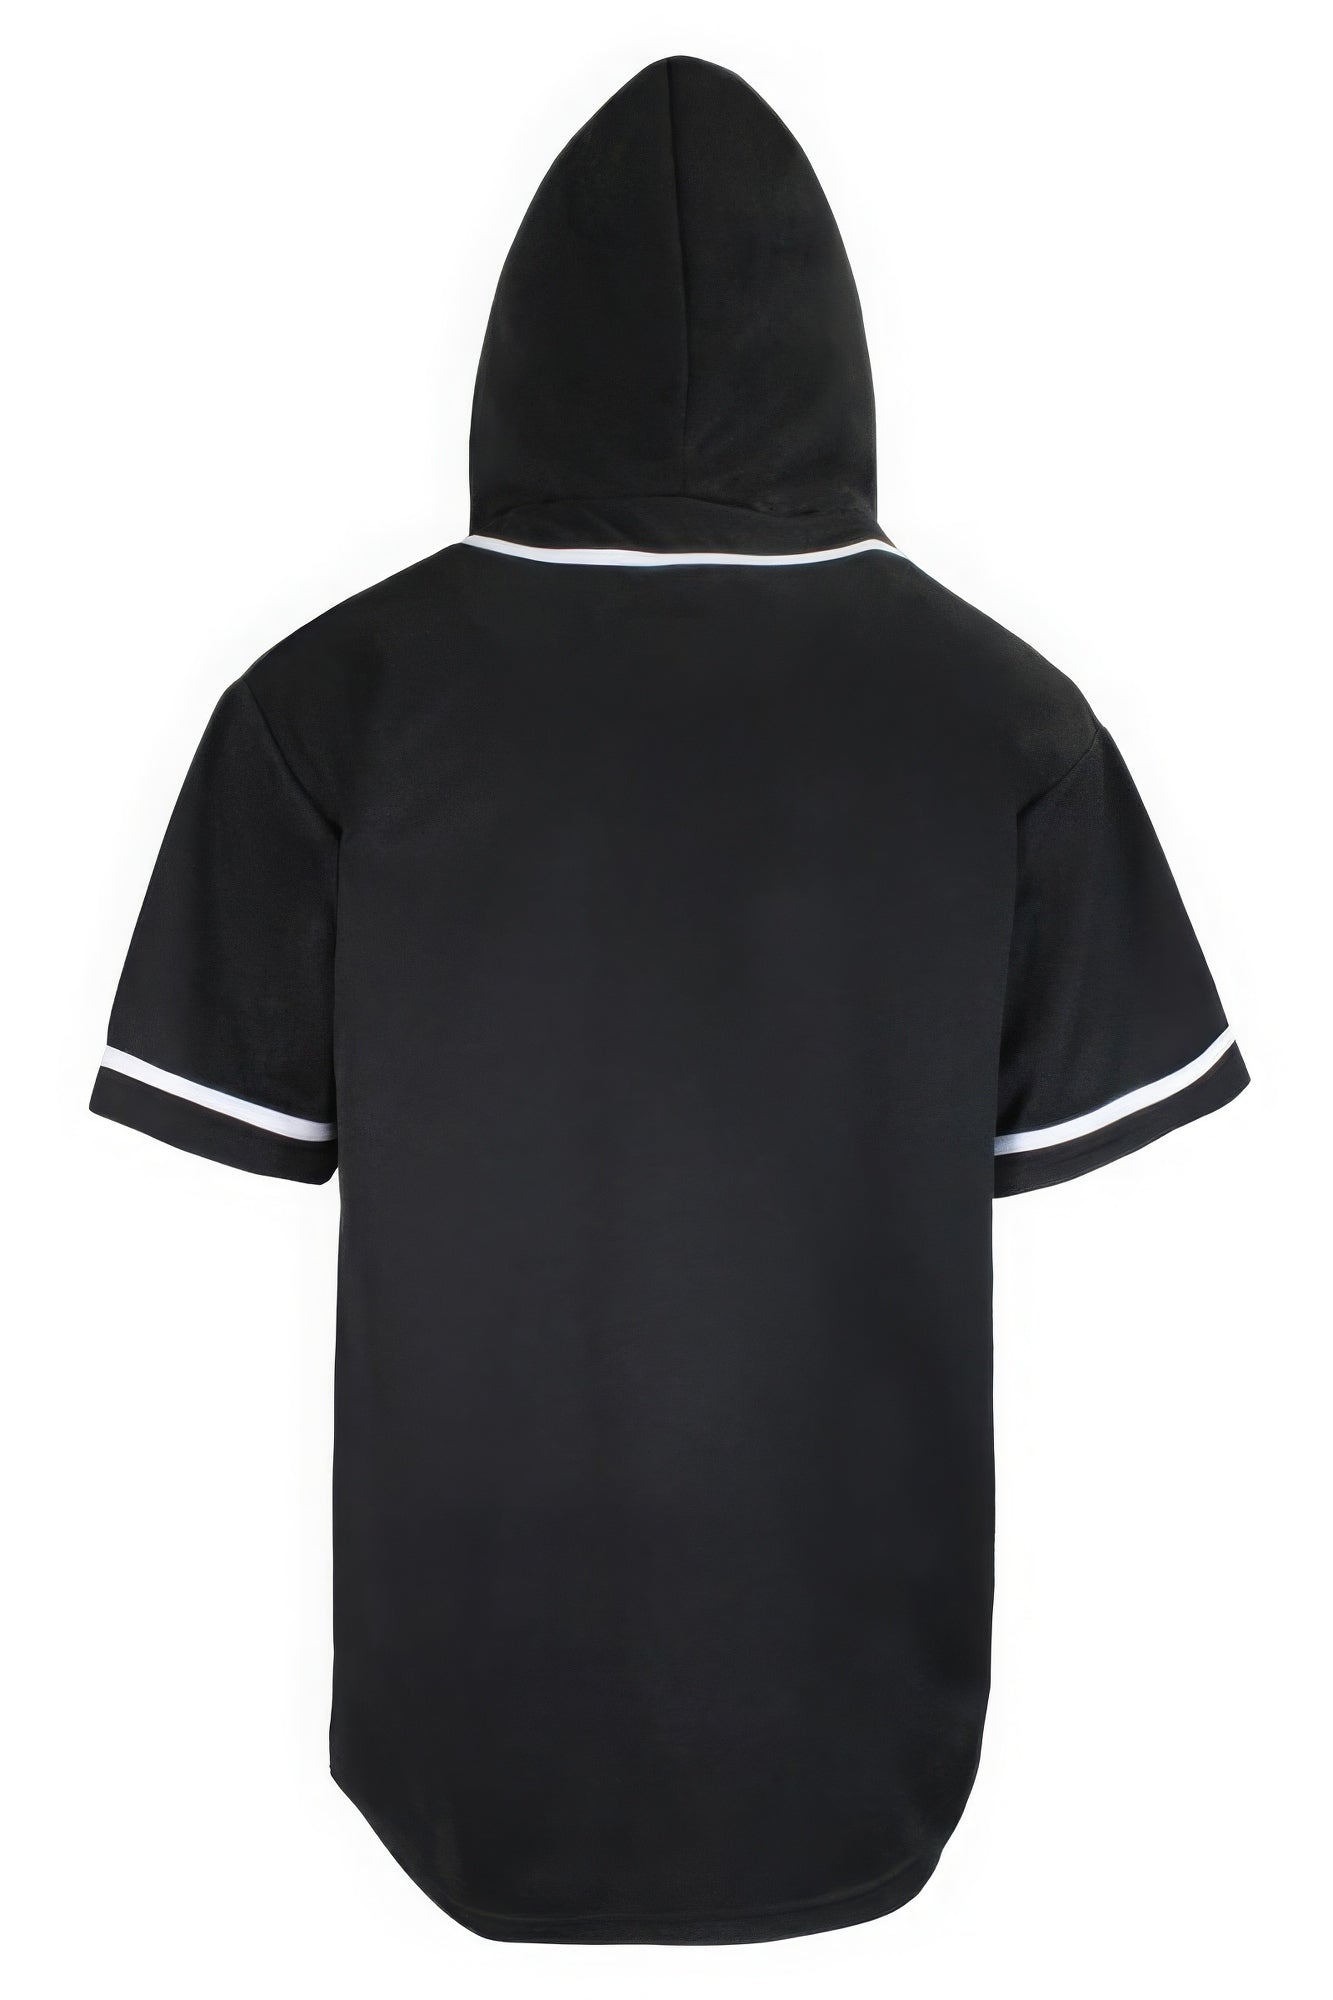 - Hooded Baseball Jersey - mens baseball jersey at TFC&H Co.